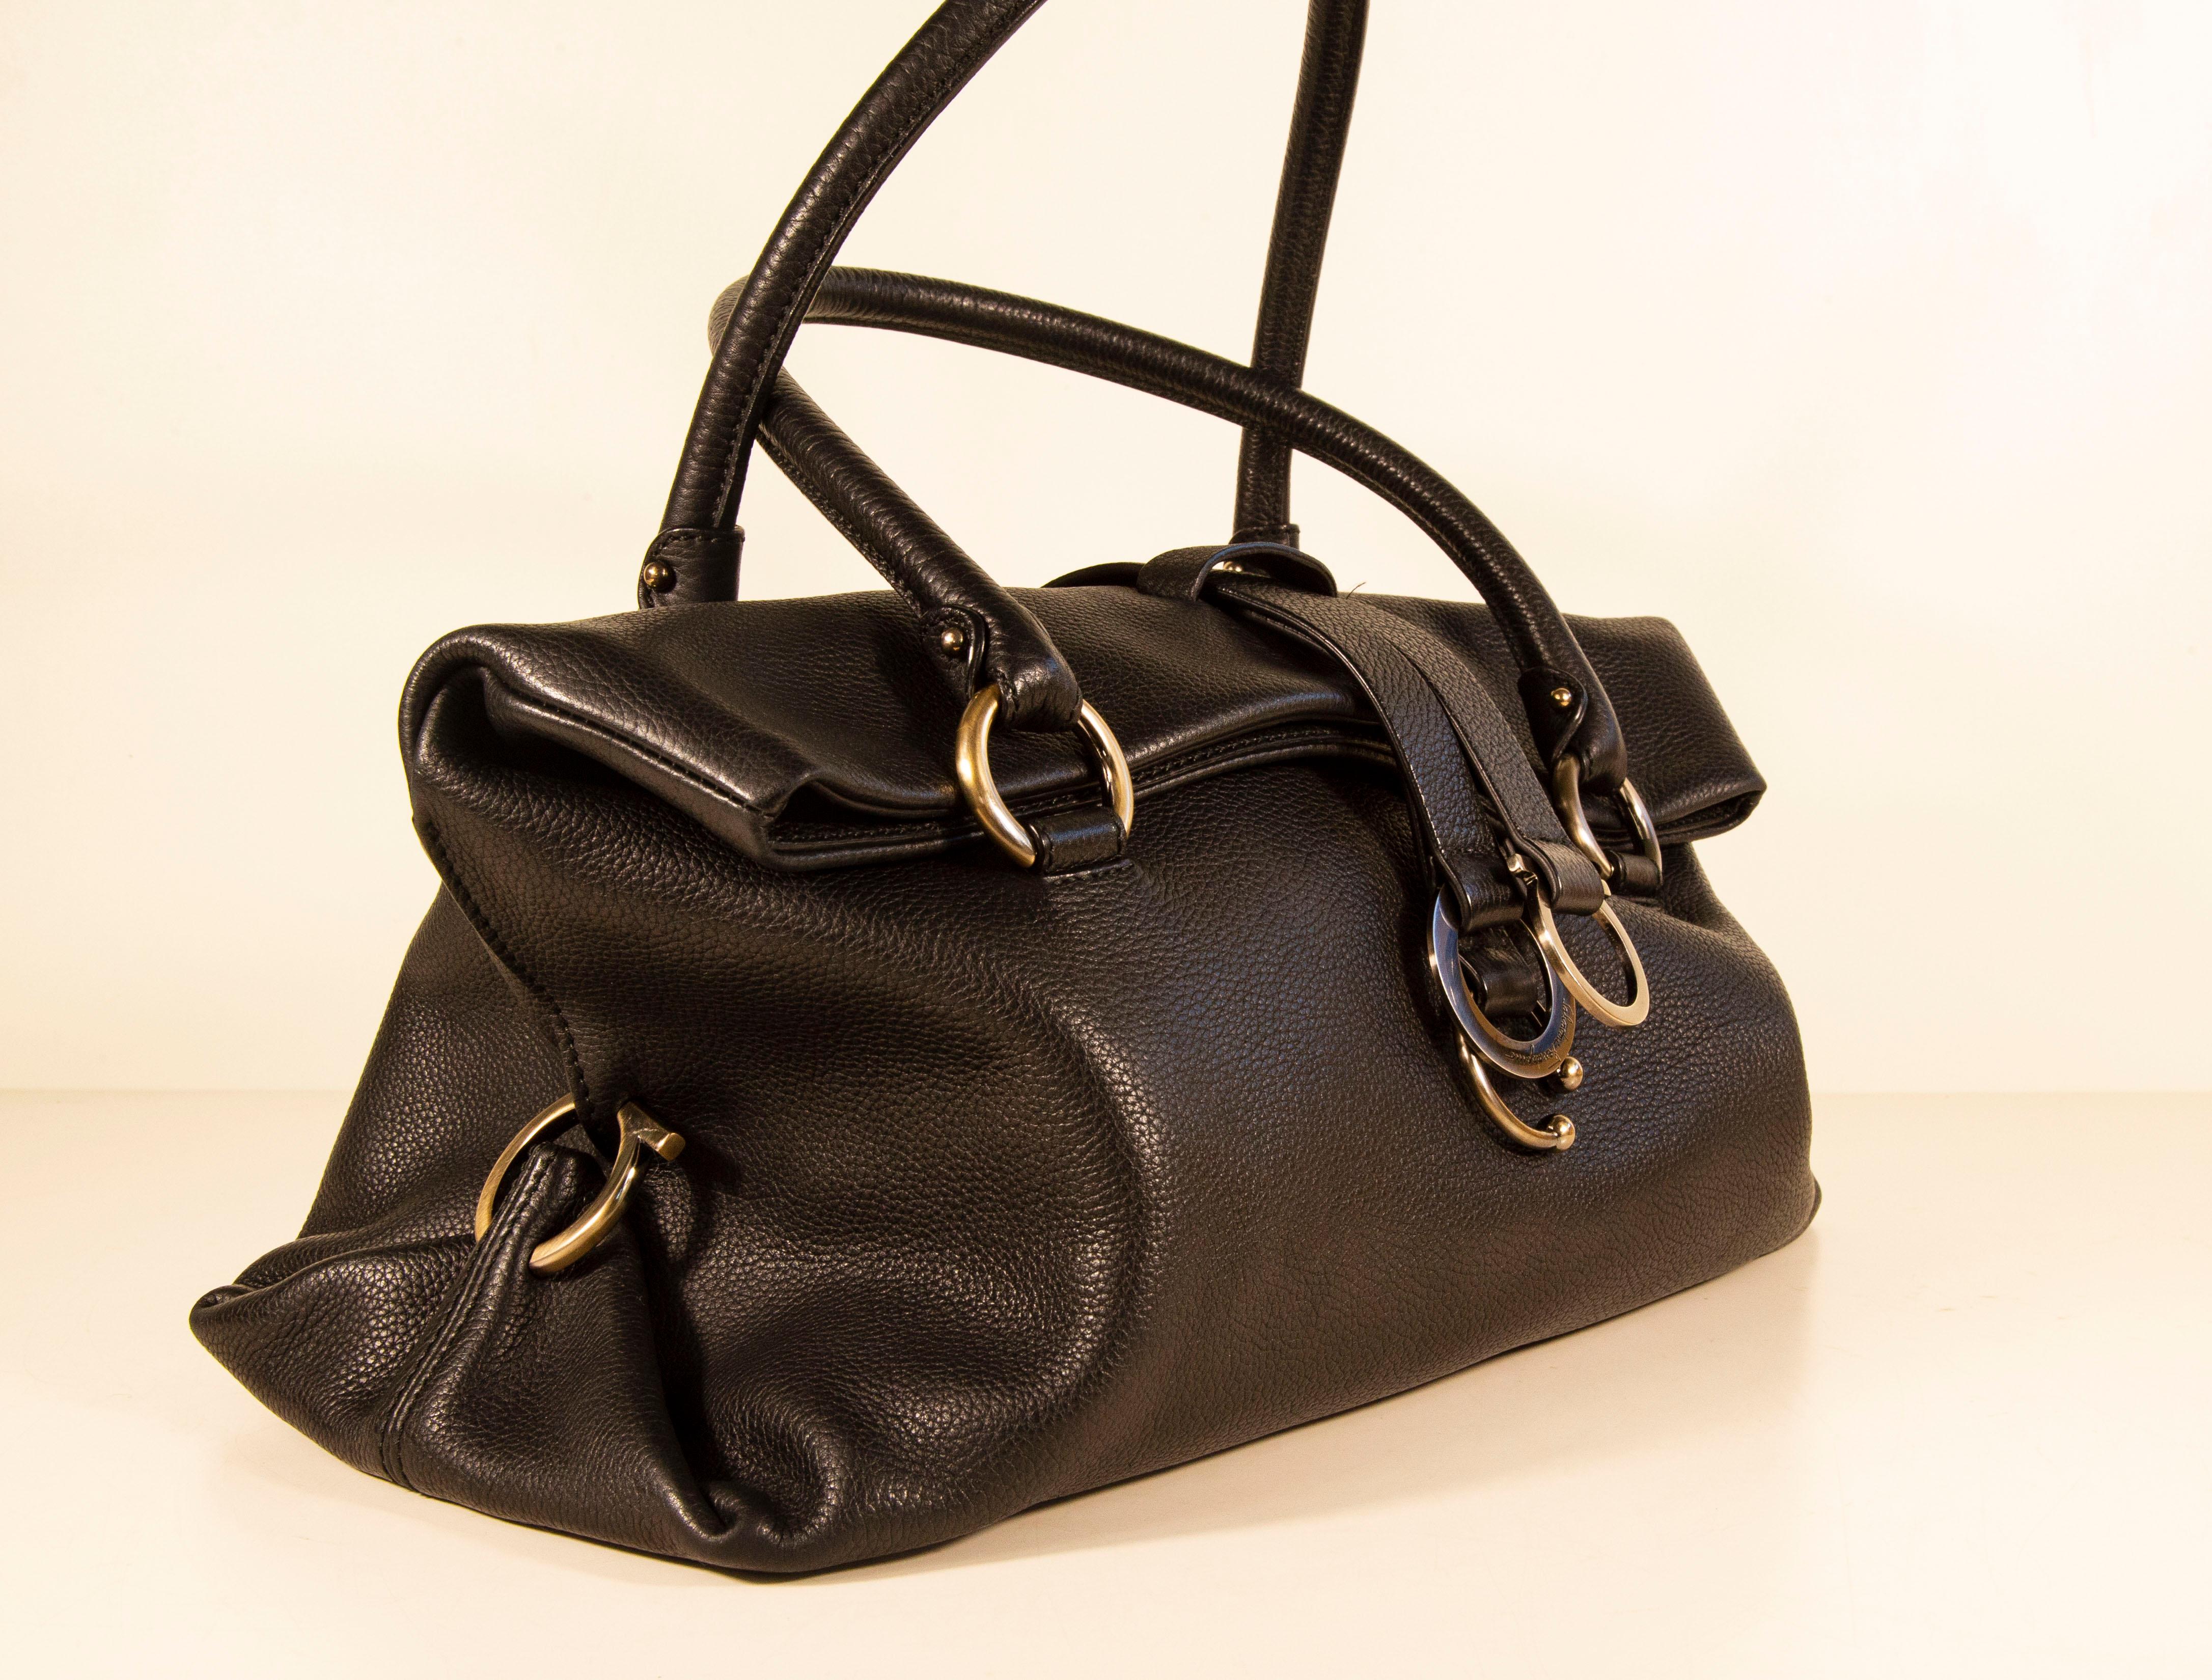 Women's 1990s Salvatore Ferragamo Shoulder Bag/Top Handle Bag in Black Leather